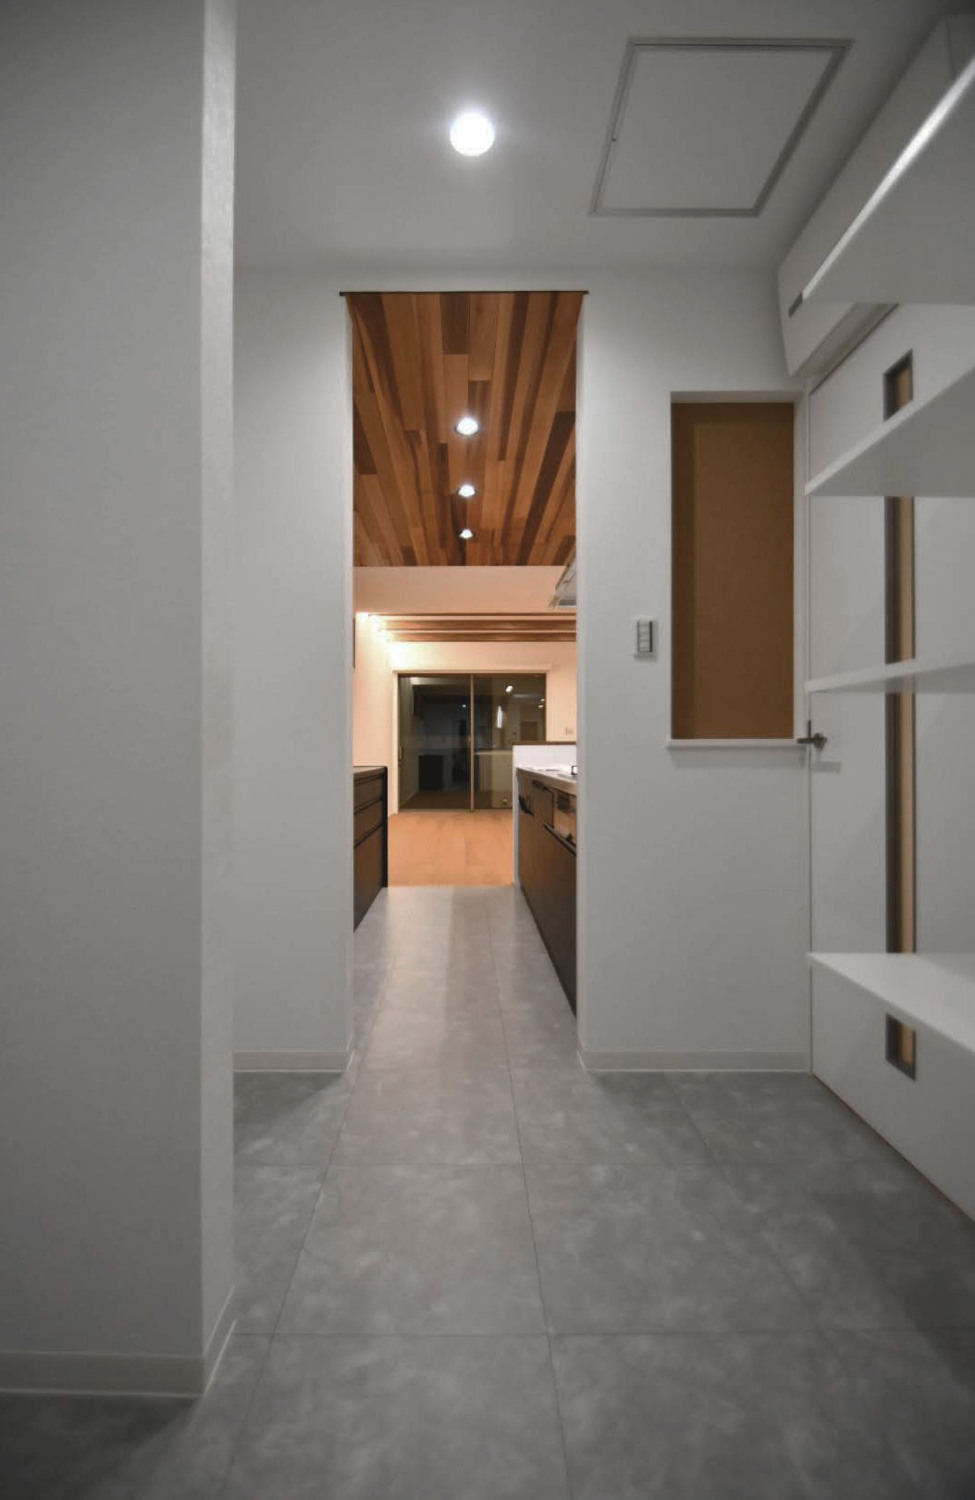 天井のアカシアの木がアクセント
自然素材をふんだんに使ったシンプルなお家